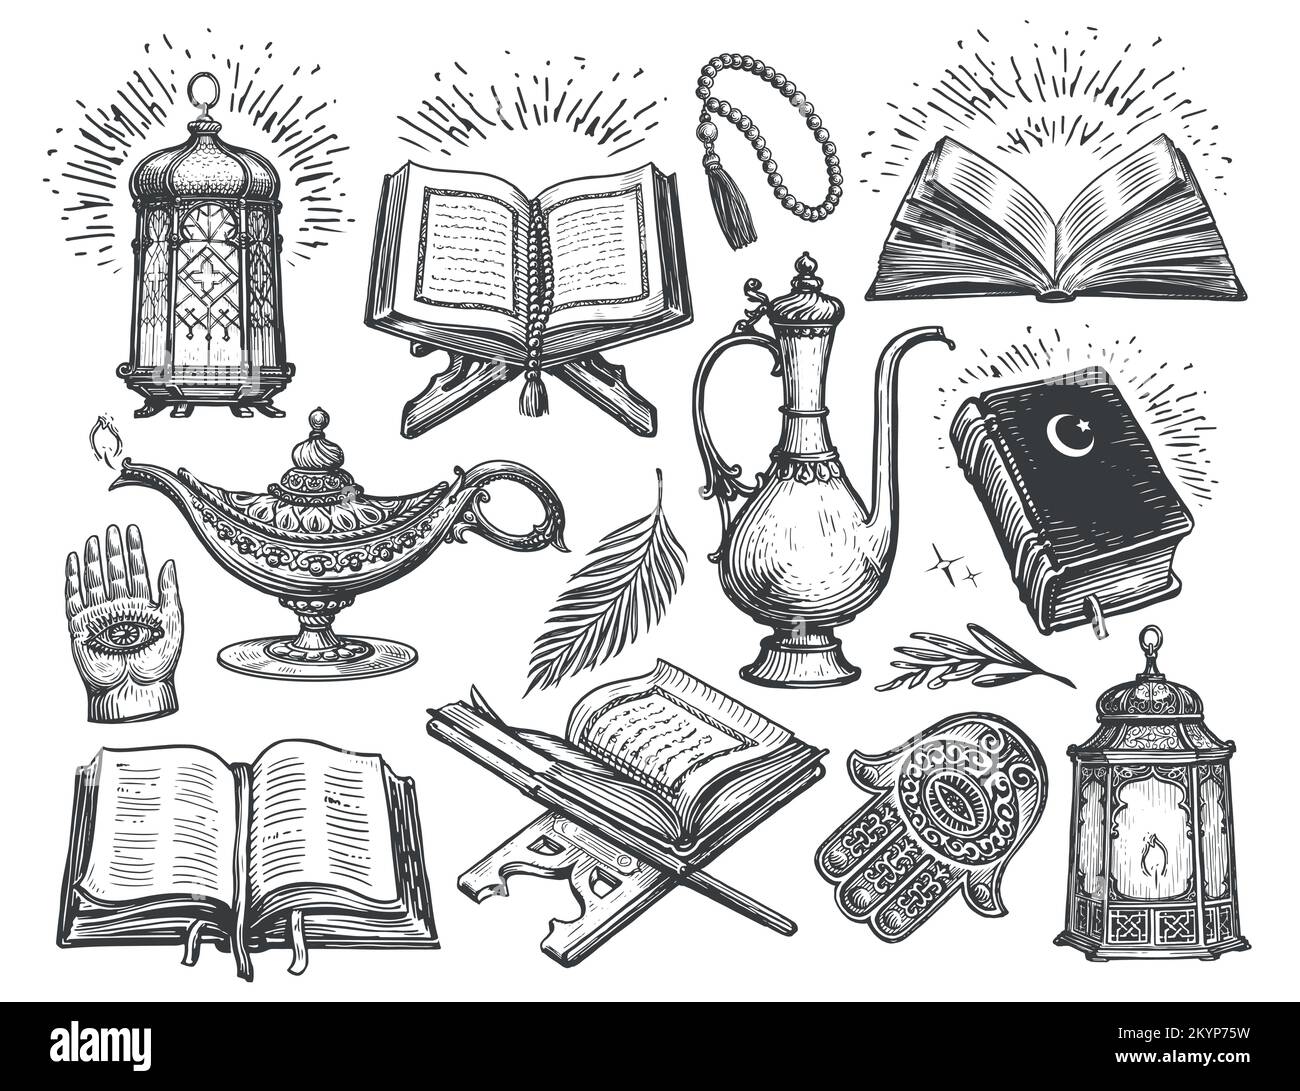 Schizzo del concetto di Islam. Culto, oggetti religiosi e simboli in stile d'incisione vintage. Illustrazione del vettore di raccolta Illustrazione Vettoriale